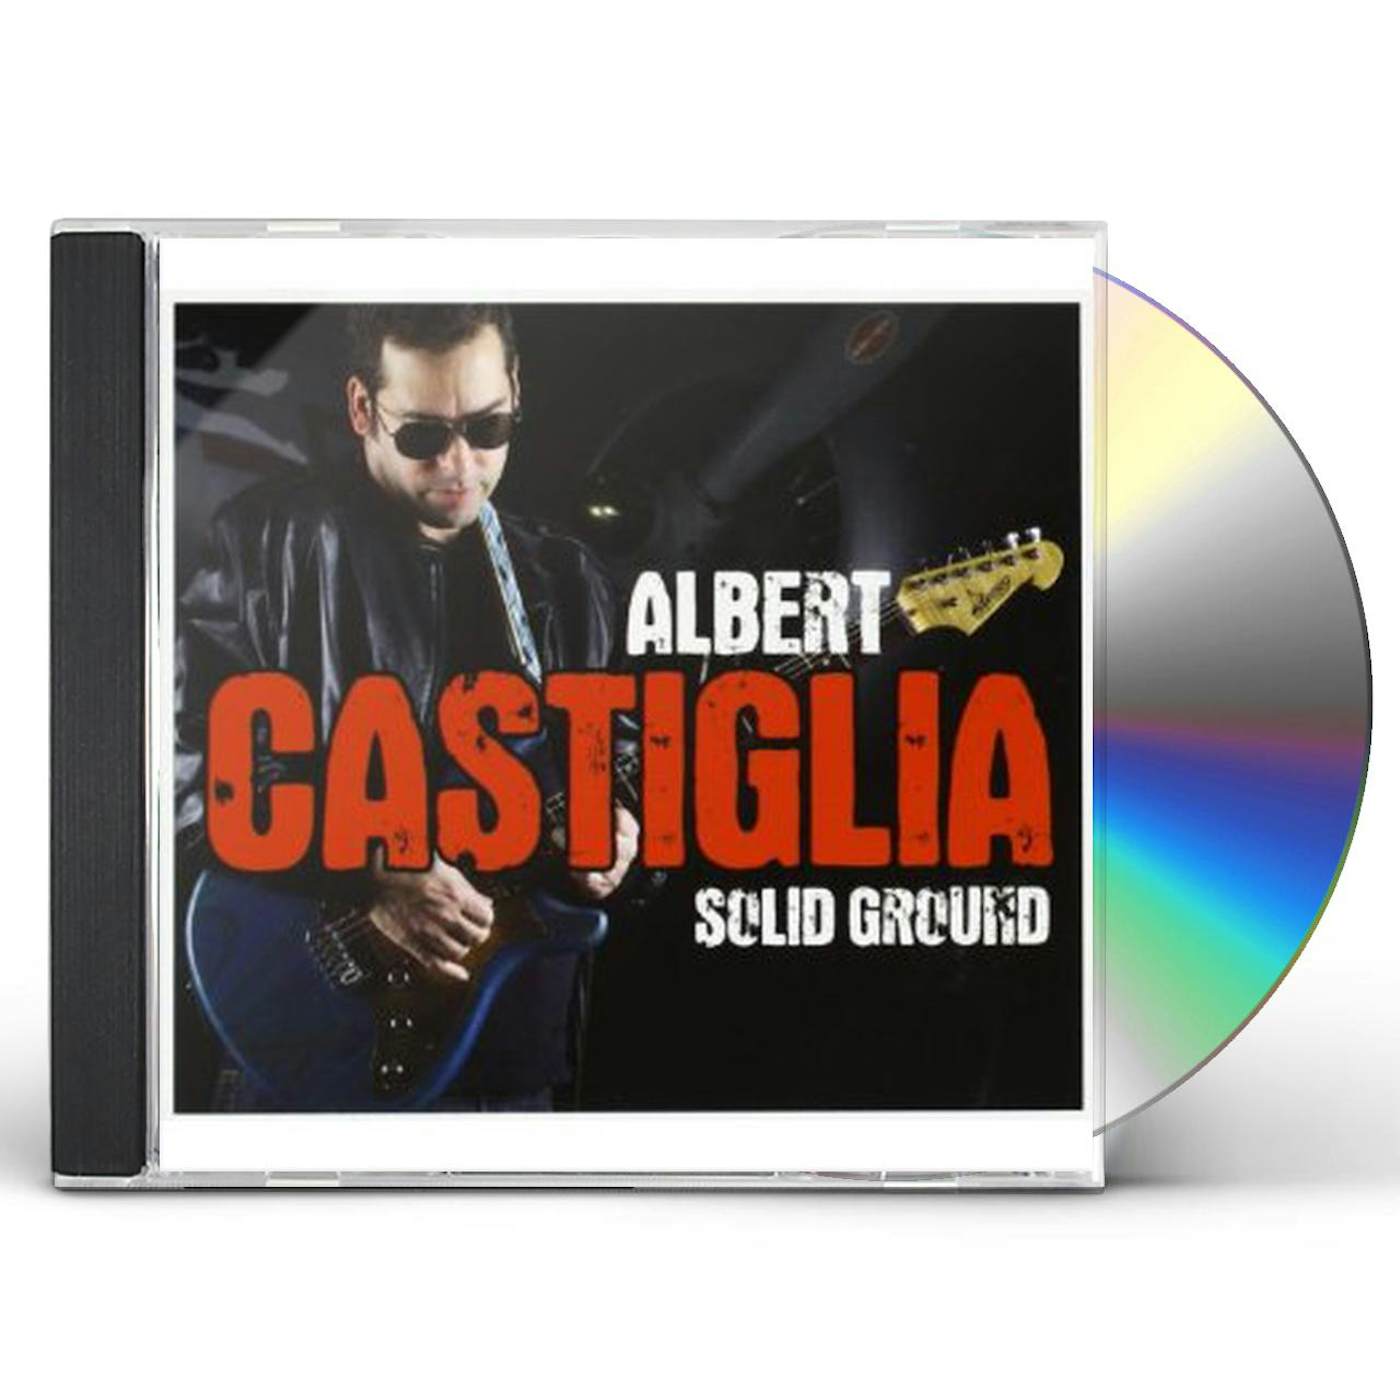 Albert Castiglia SOLID GROUND CD